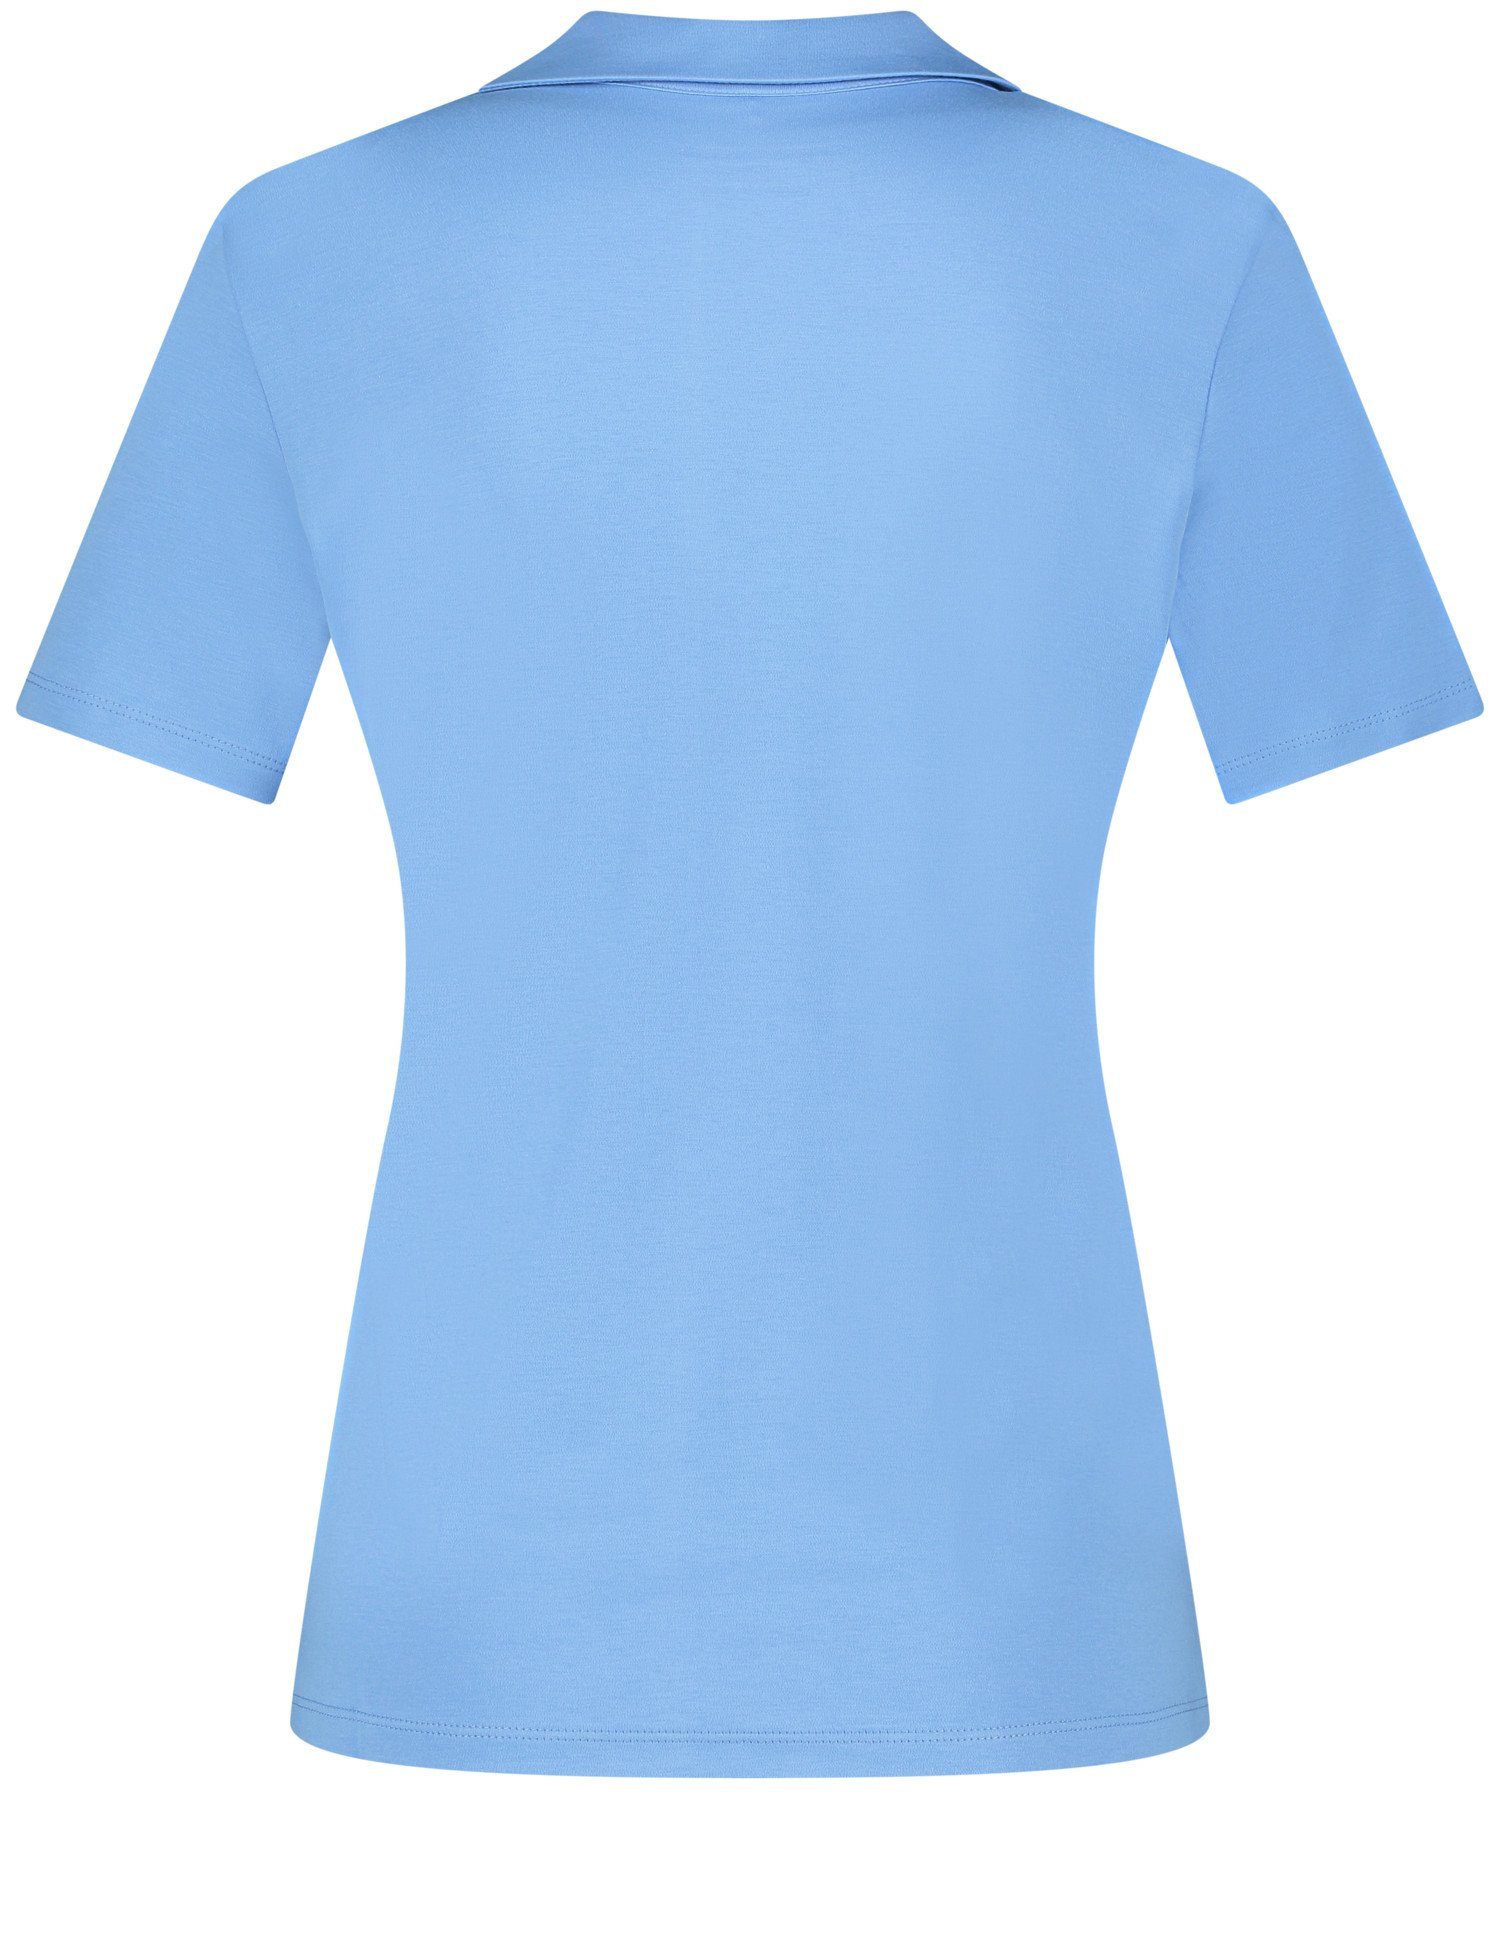 GERRY WEBER Poloshirt Blue Bright Kurzarm Poloshirt